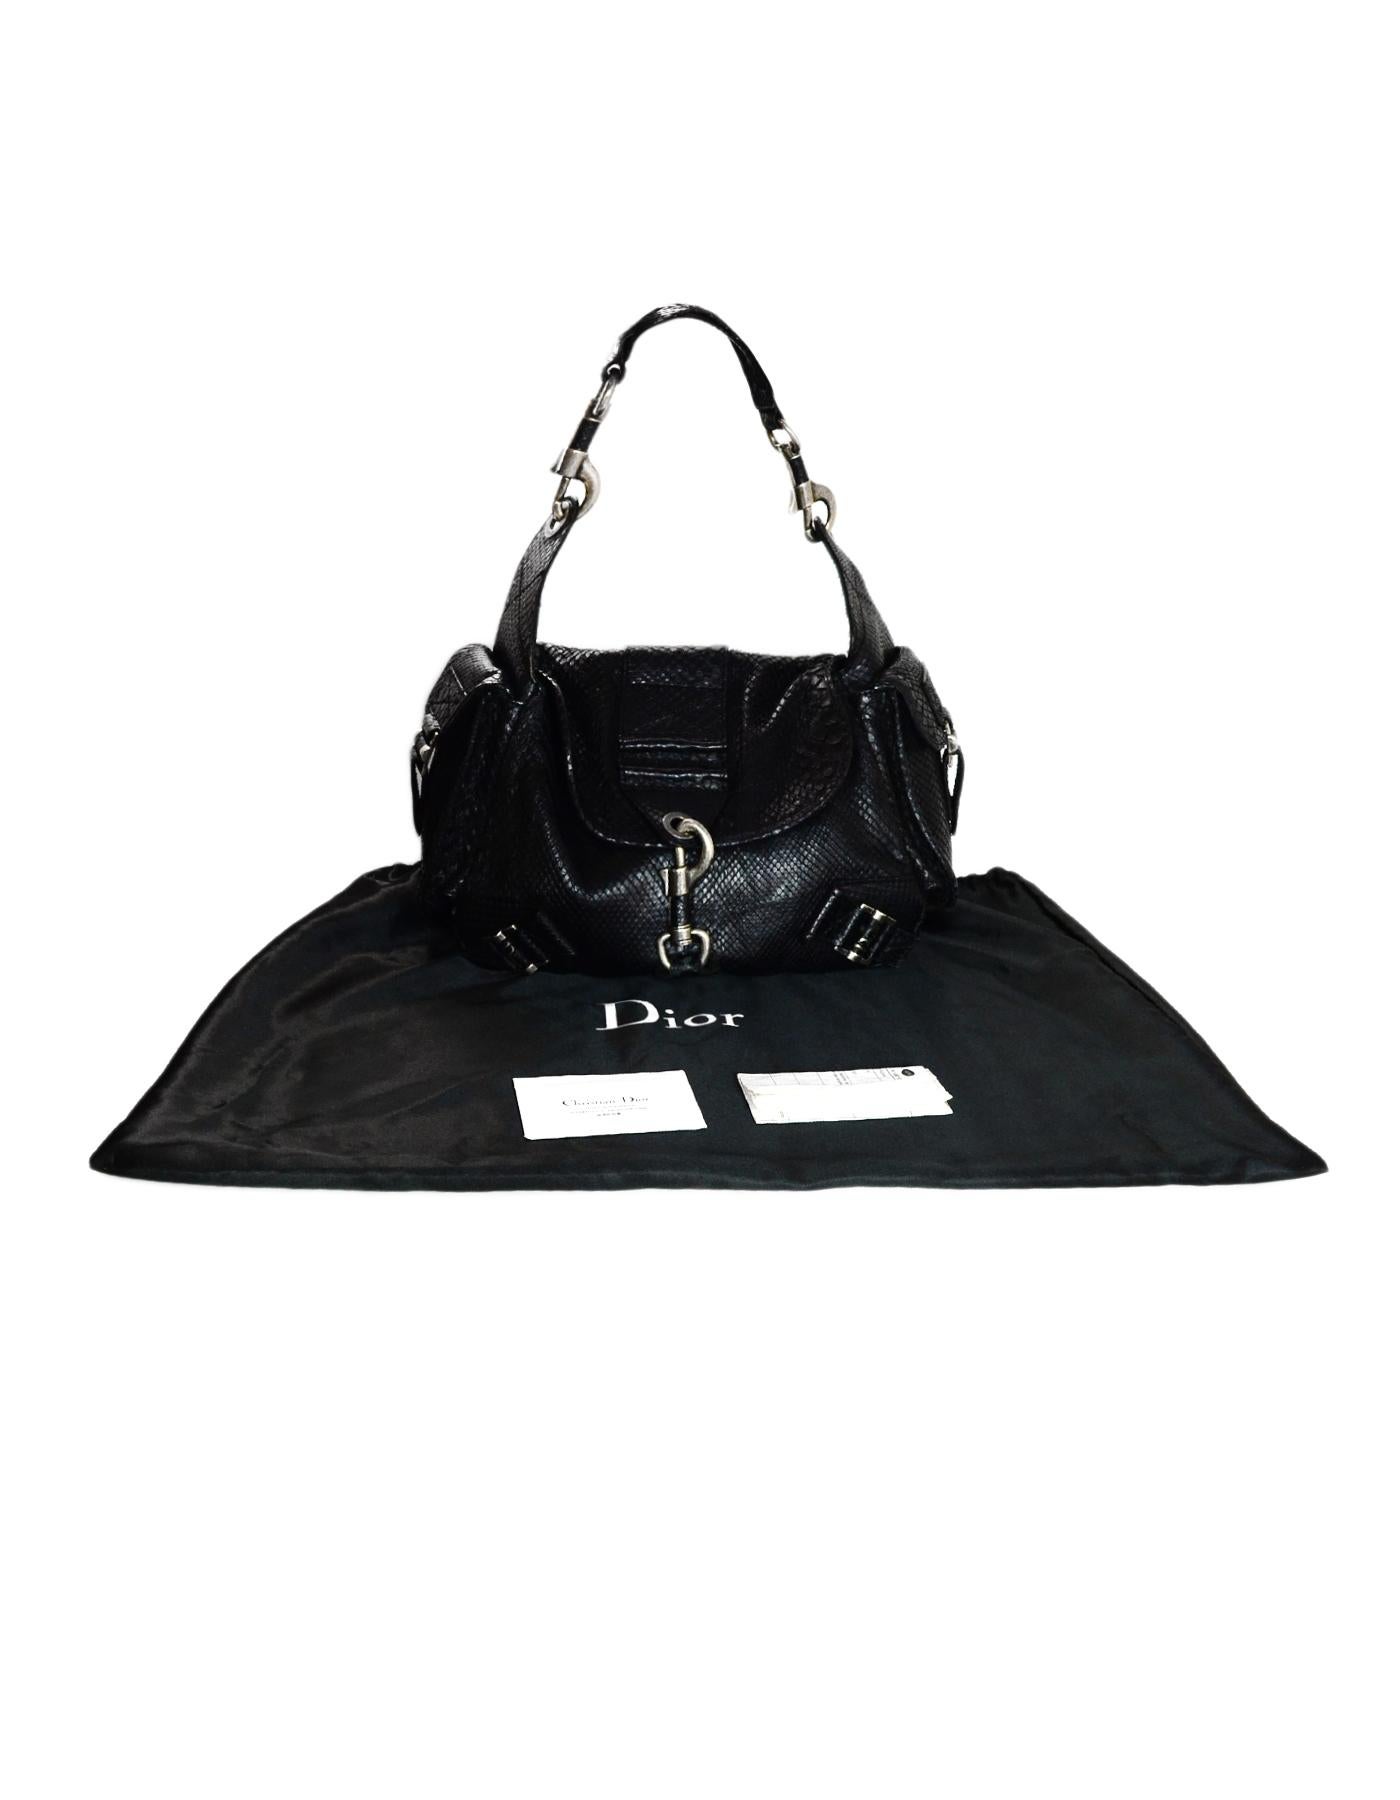 Christian Dior Limited Edition Black Python Shoulder Bag w/ Side Pockets 6